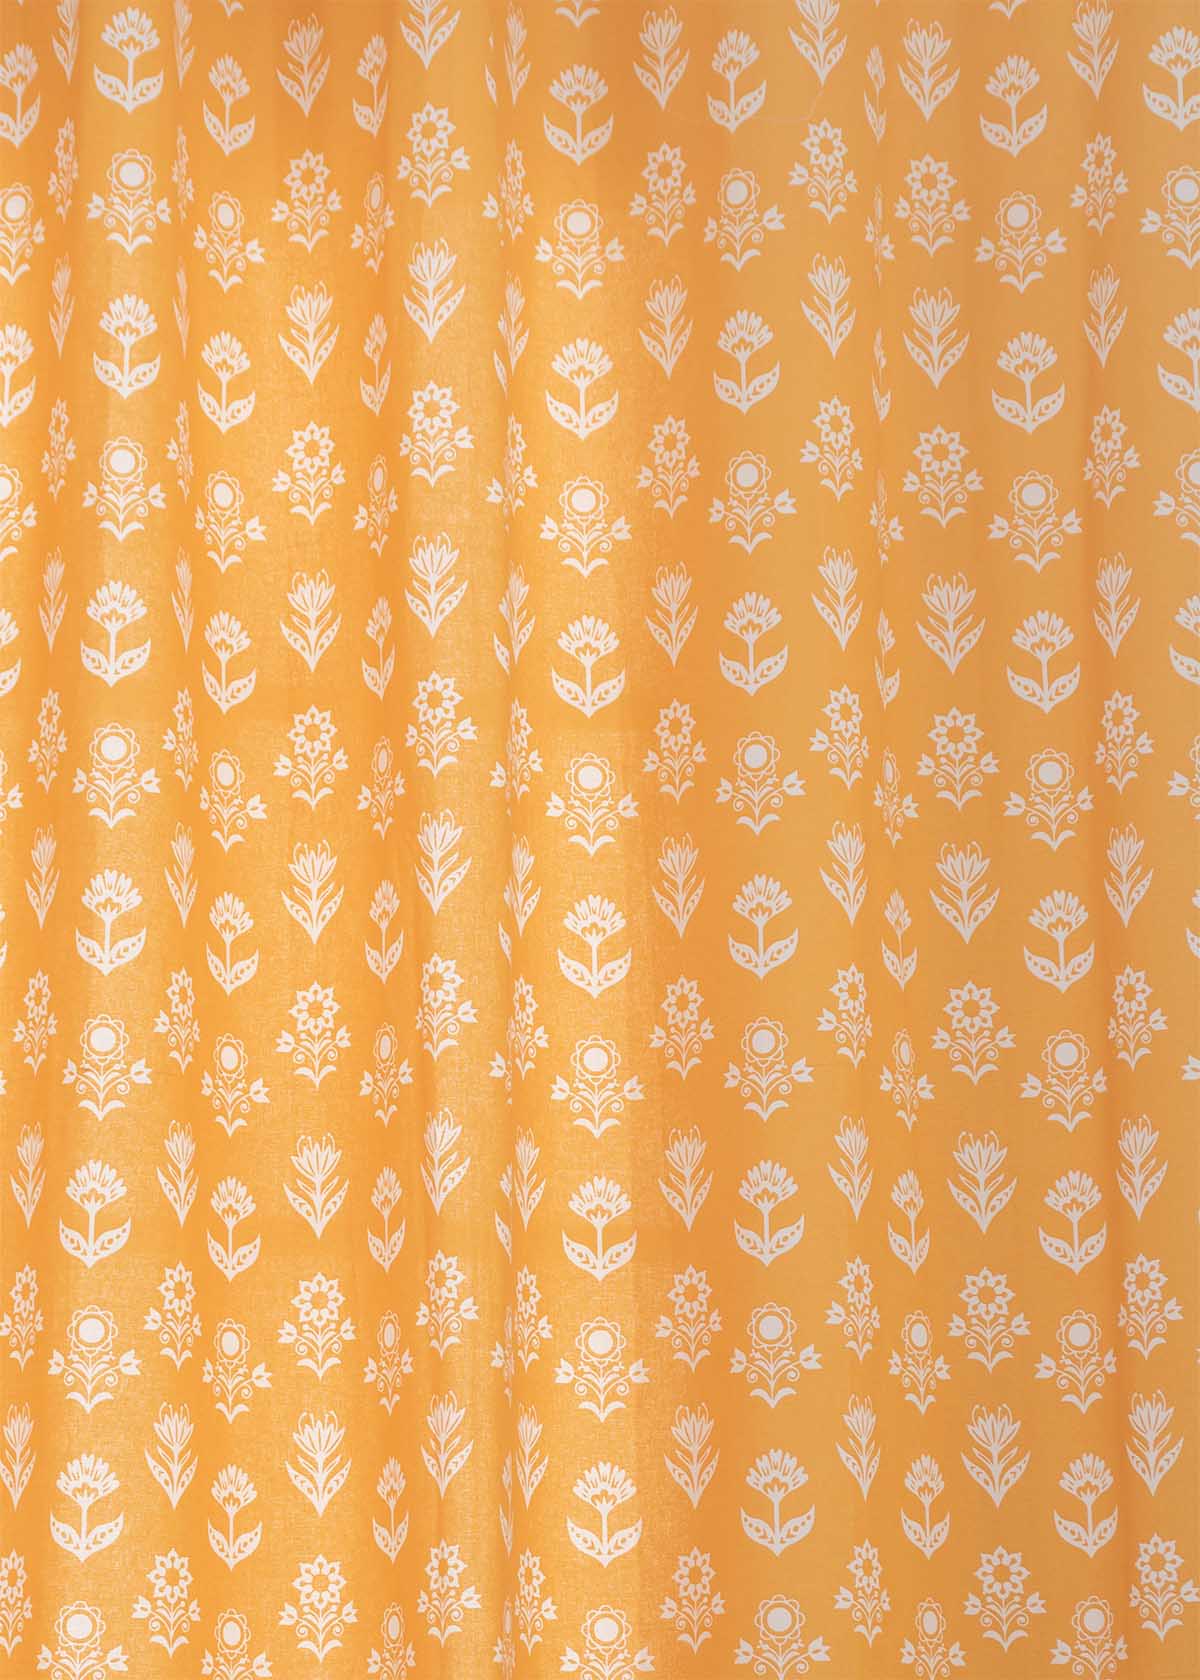 Dahlia 100% Customizable Cotton floral curtain for living room - Room darkening - Mustard - Mustard